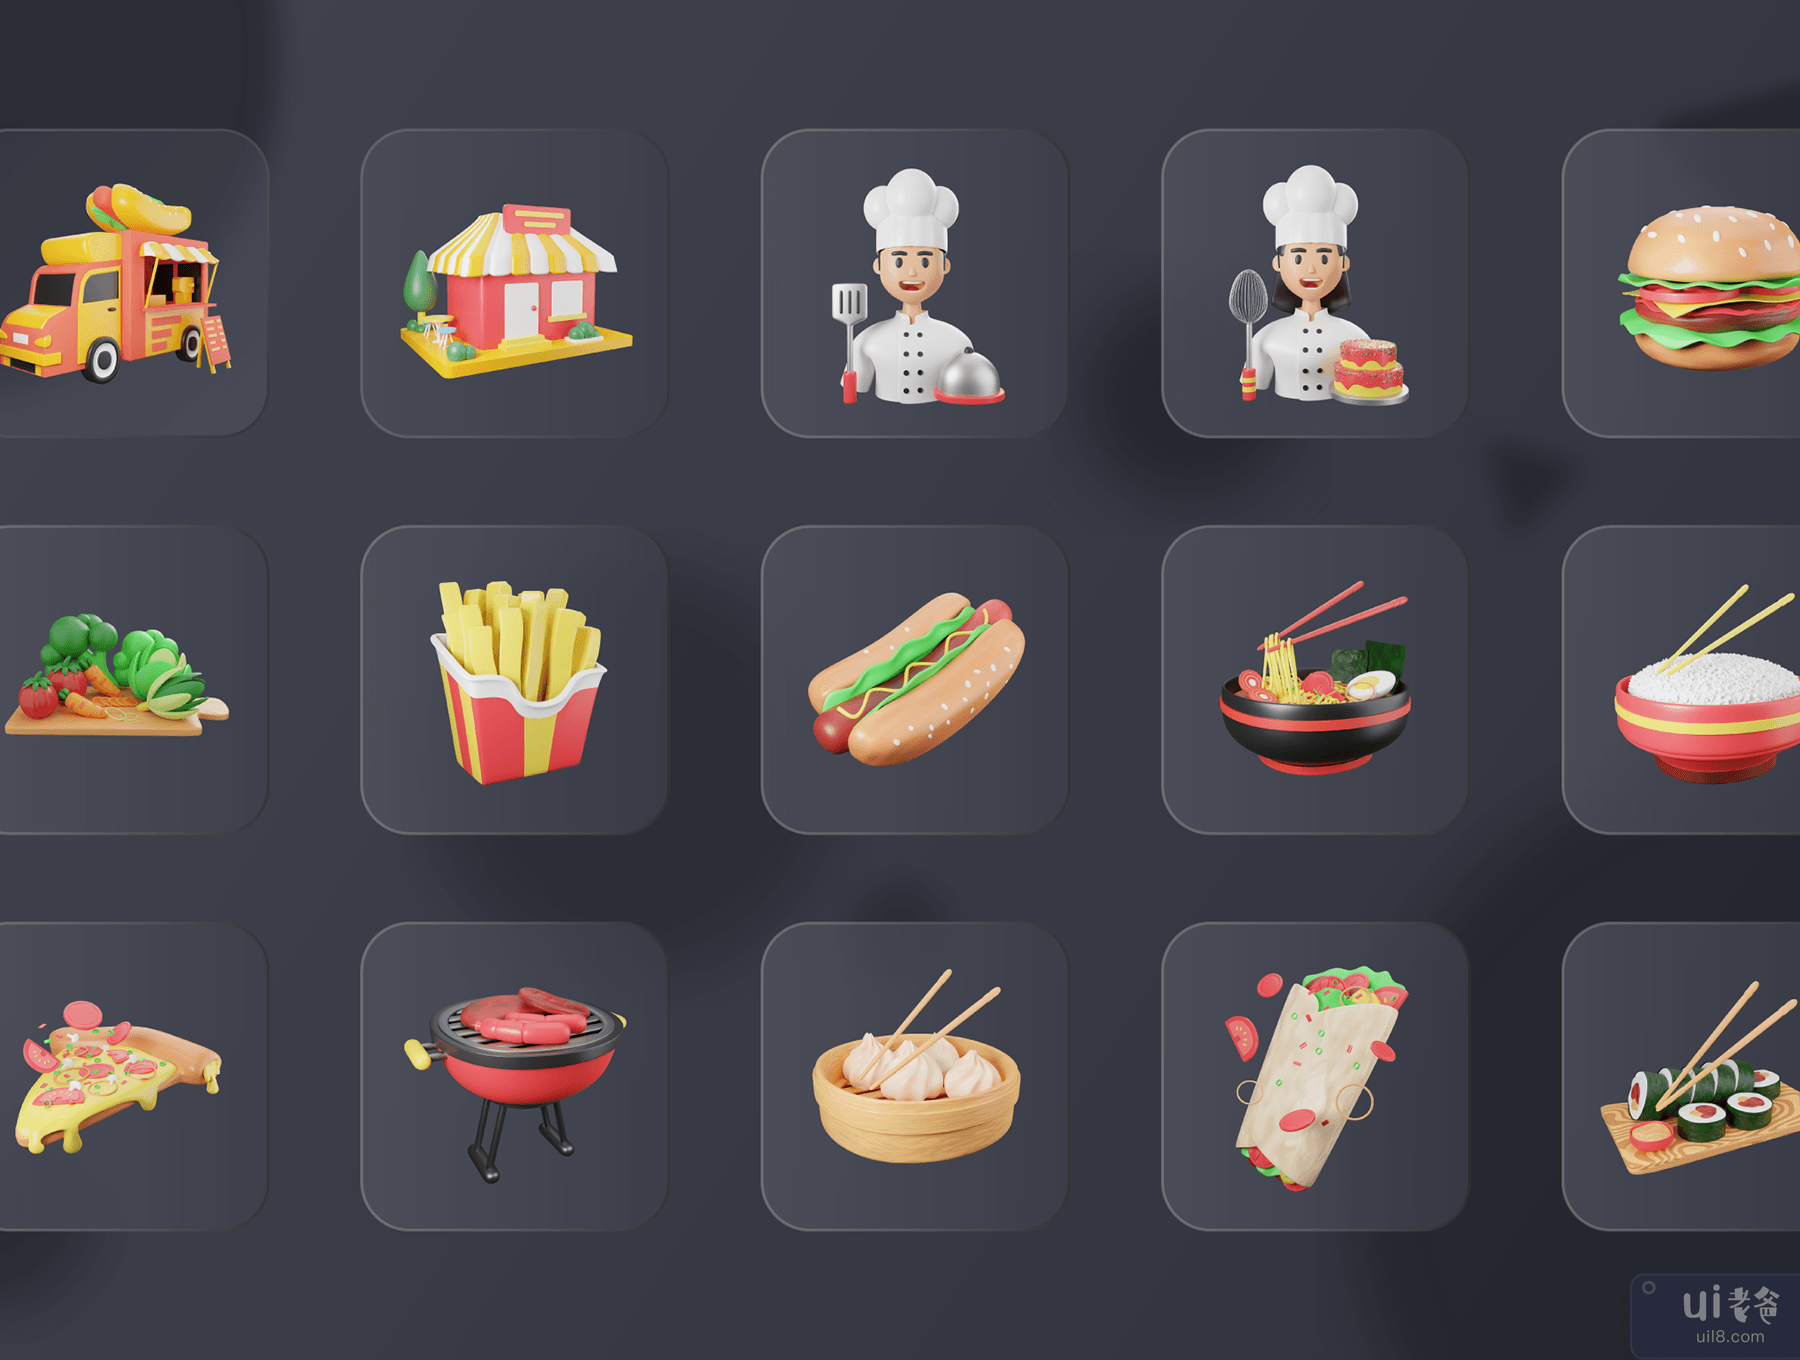 30 个 3D 食品和餐饮图标插图 (30 3D Food & Meals Icons Illustration)插图1